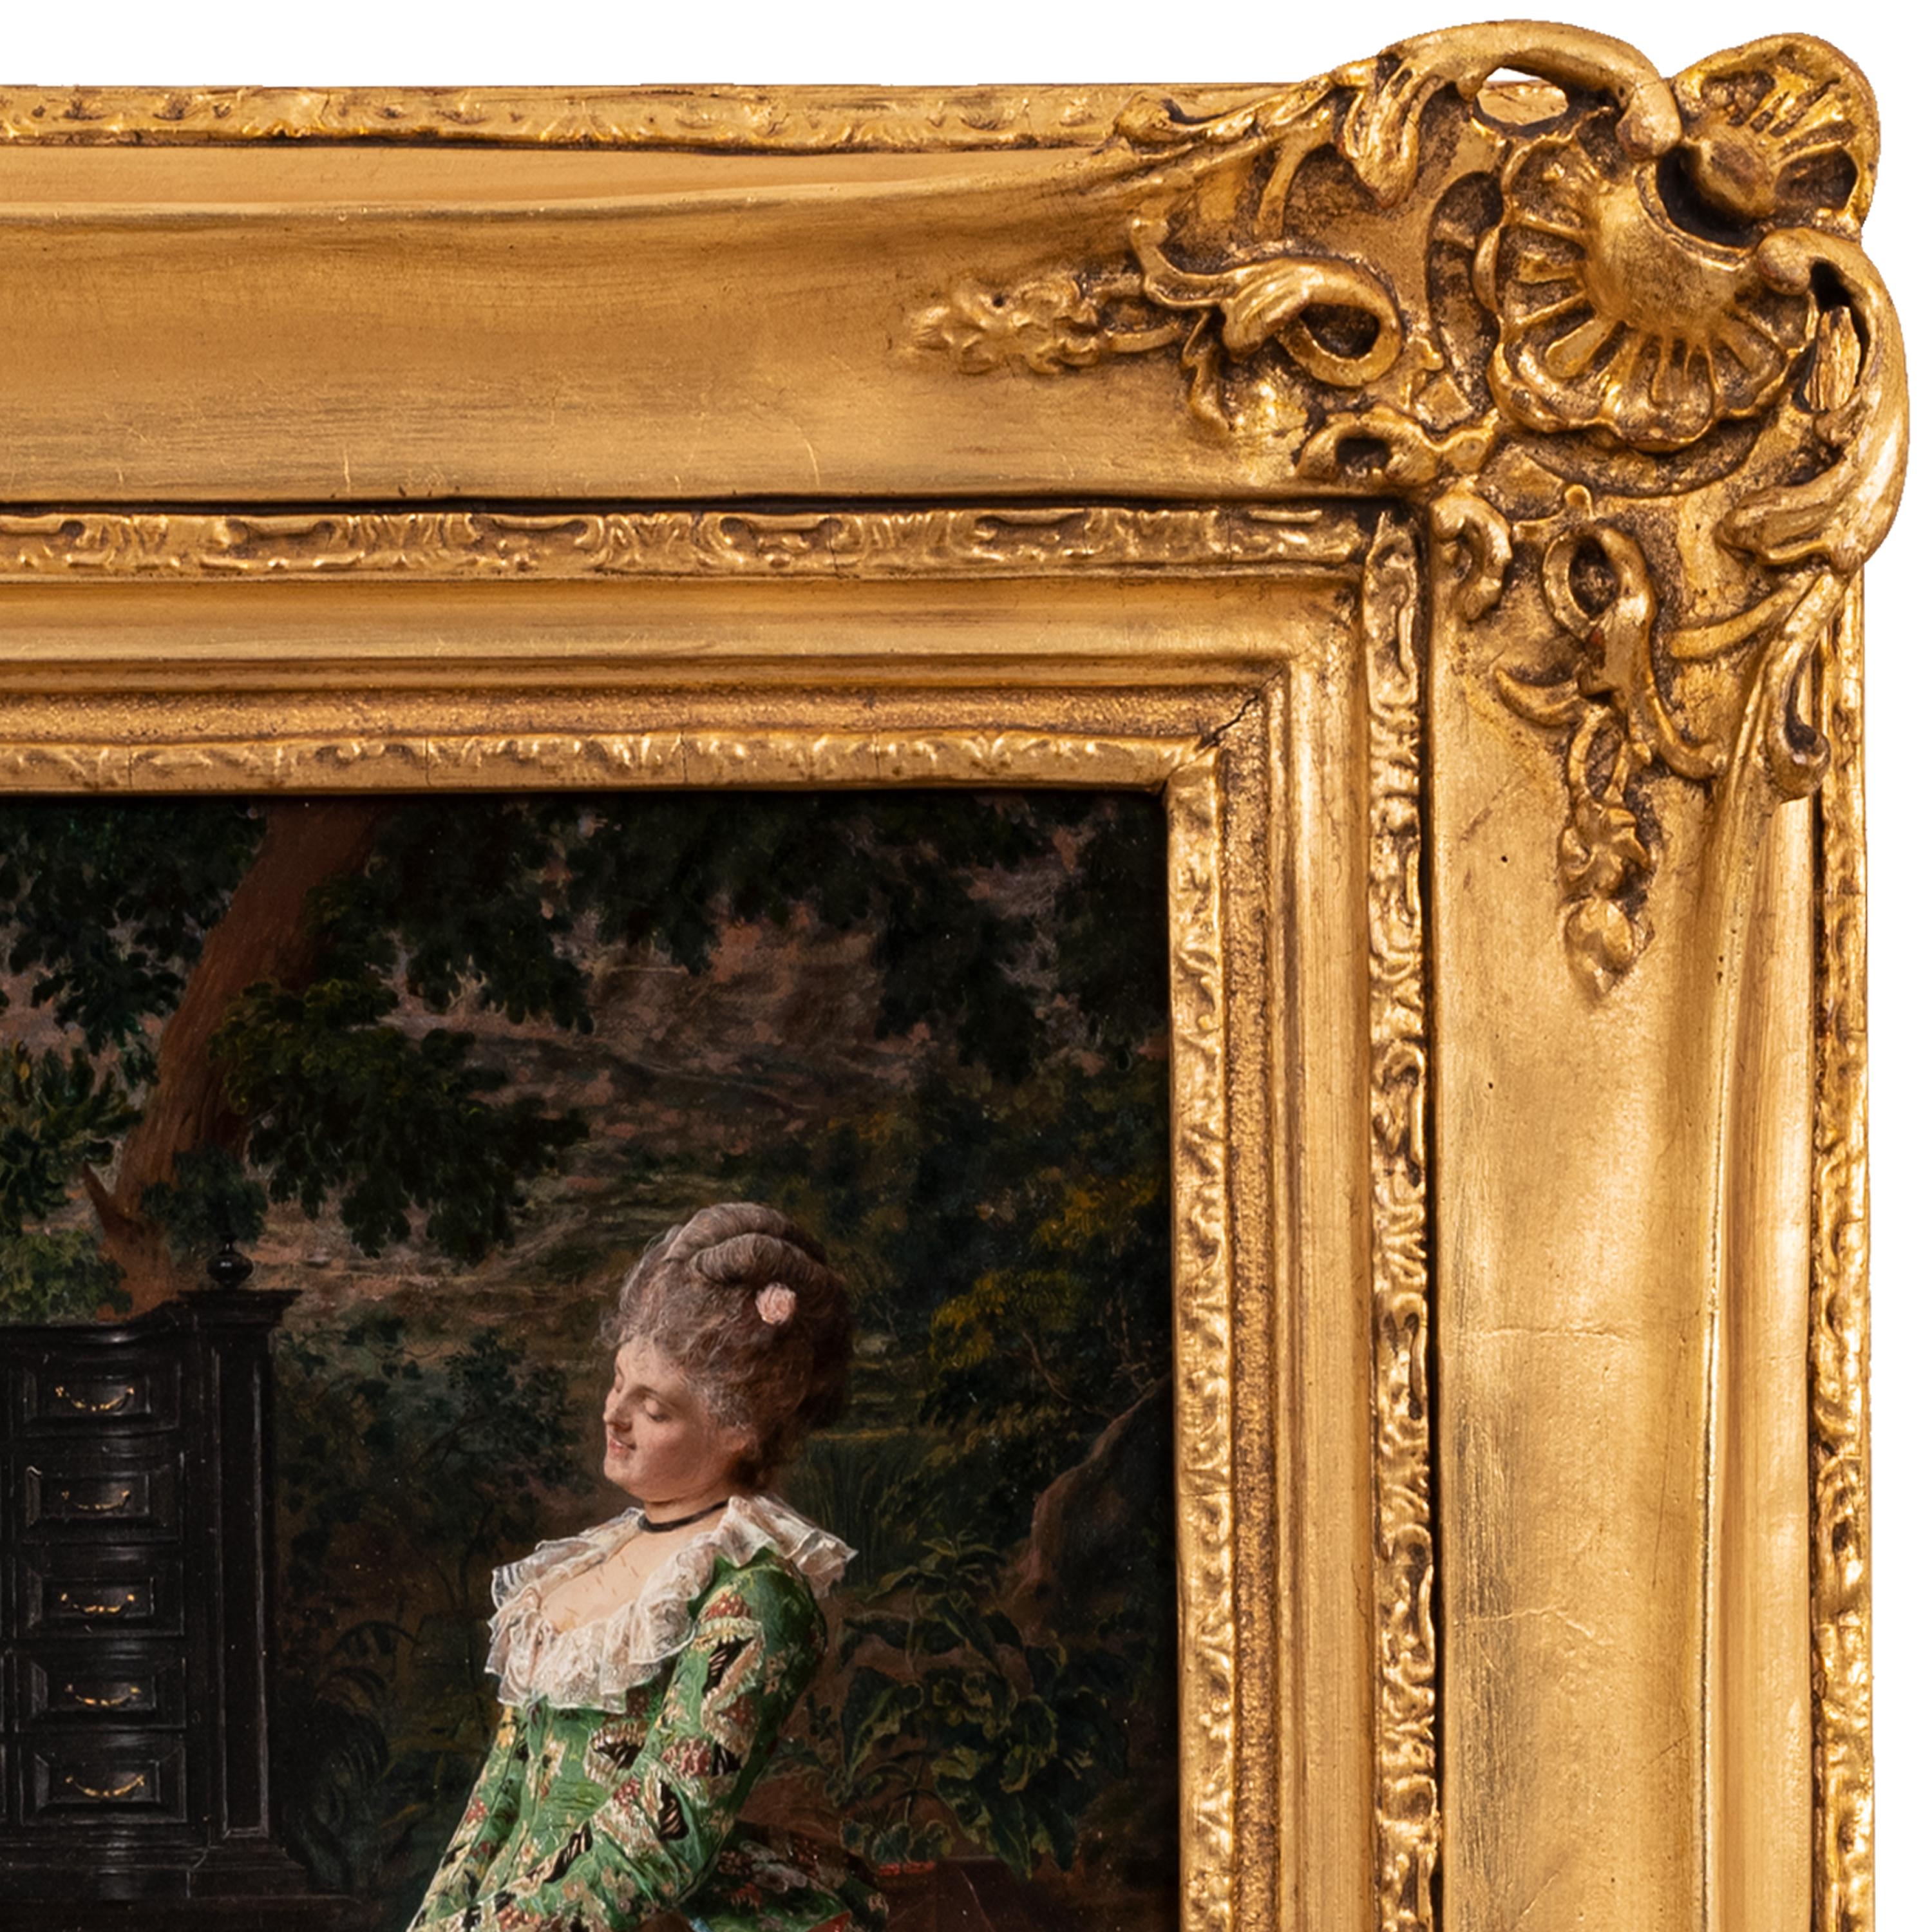 Eine sehr gute antike Öl auf Panel Kostüm Genre Gemälde von dem berühmten norditalienischen Künstler, Francesco Vinea (1845-1902), das Gemälde datiert signiert und datiert 1873.
Vinea studierte an der Akademie der Schönen Künste in Florenz und